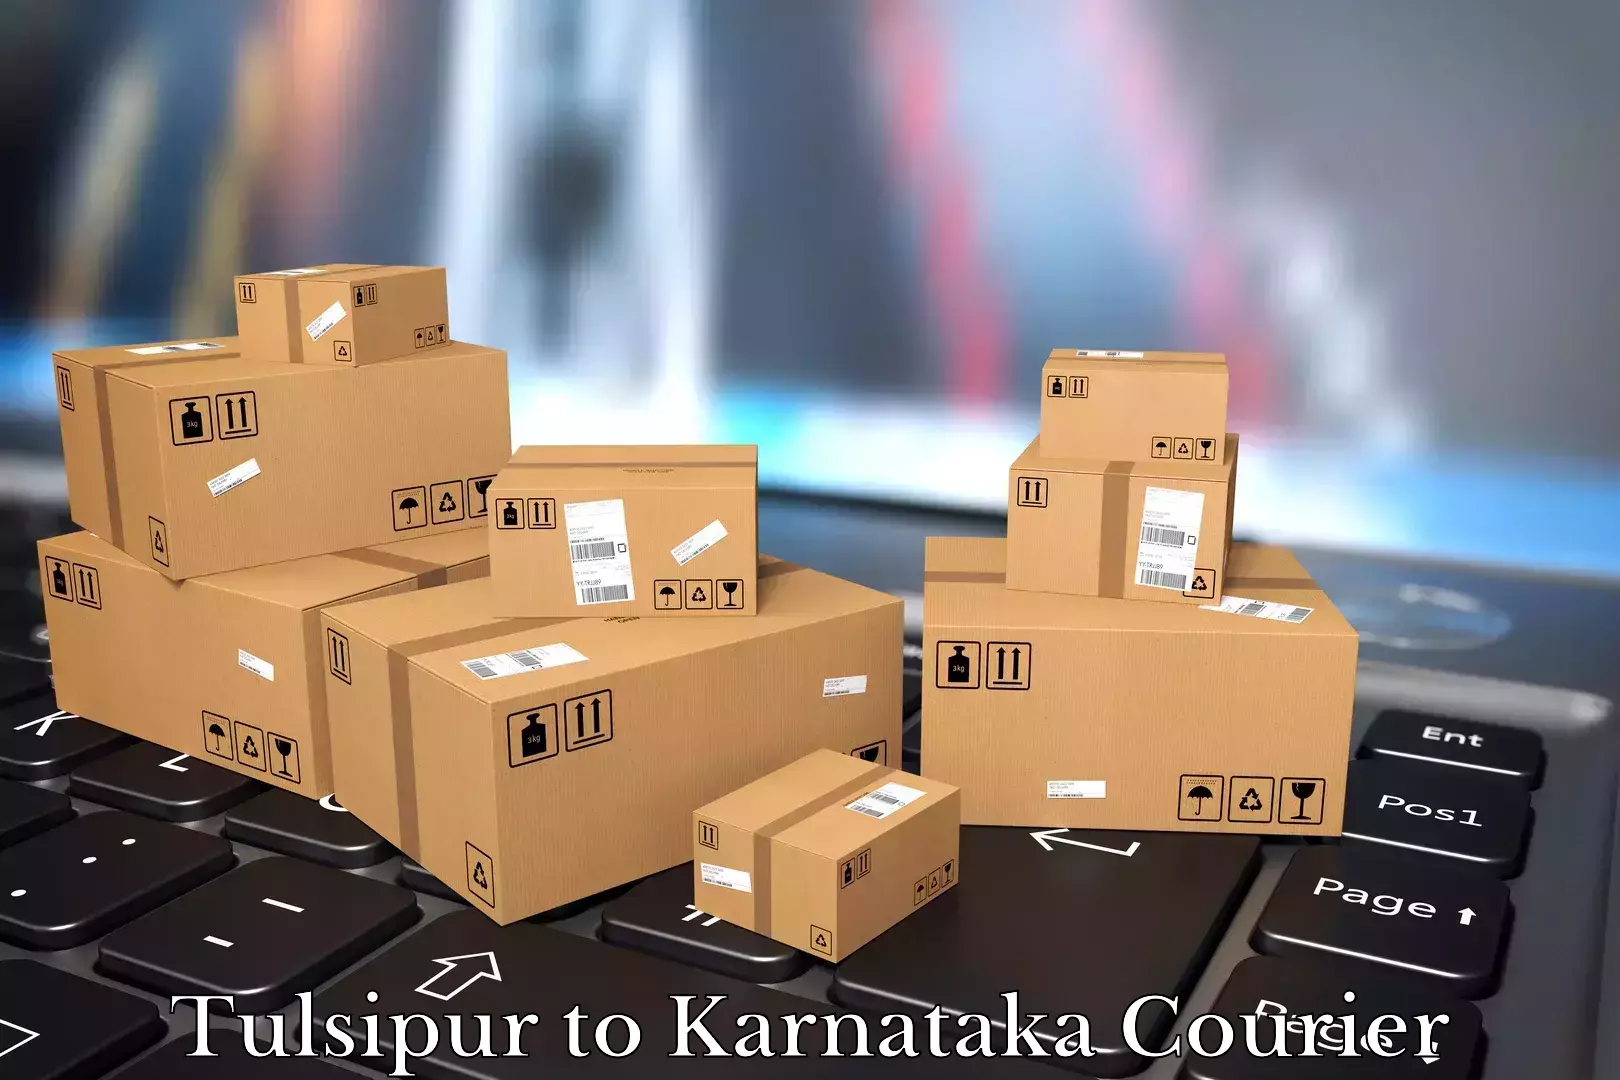 Furniture moving experts Tulsipur to Madikeri